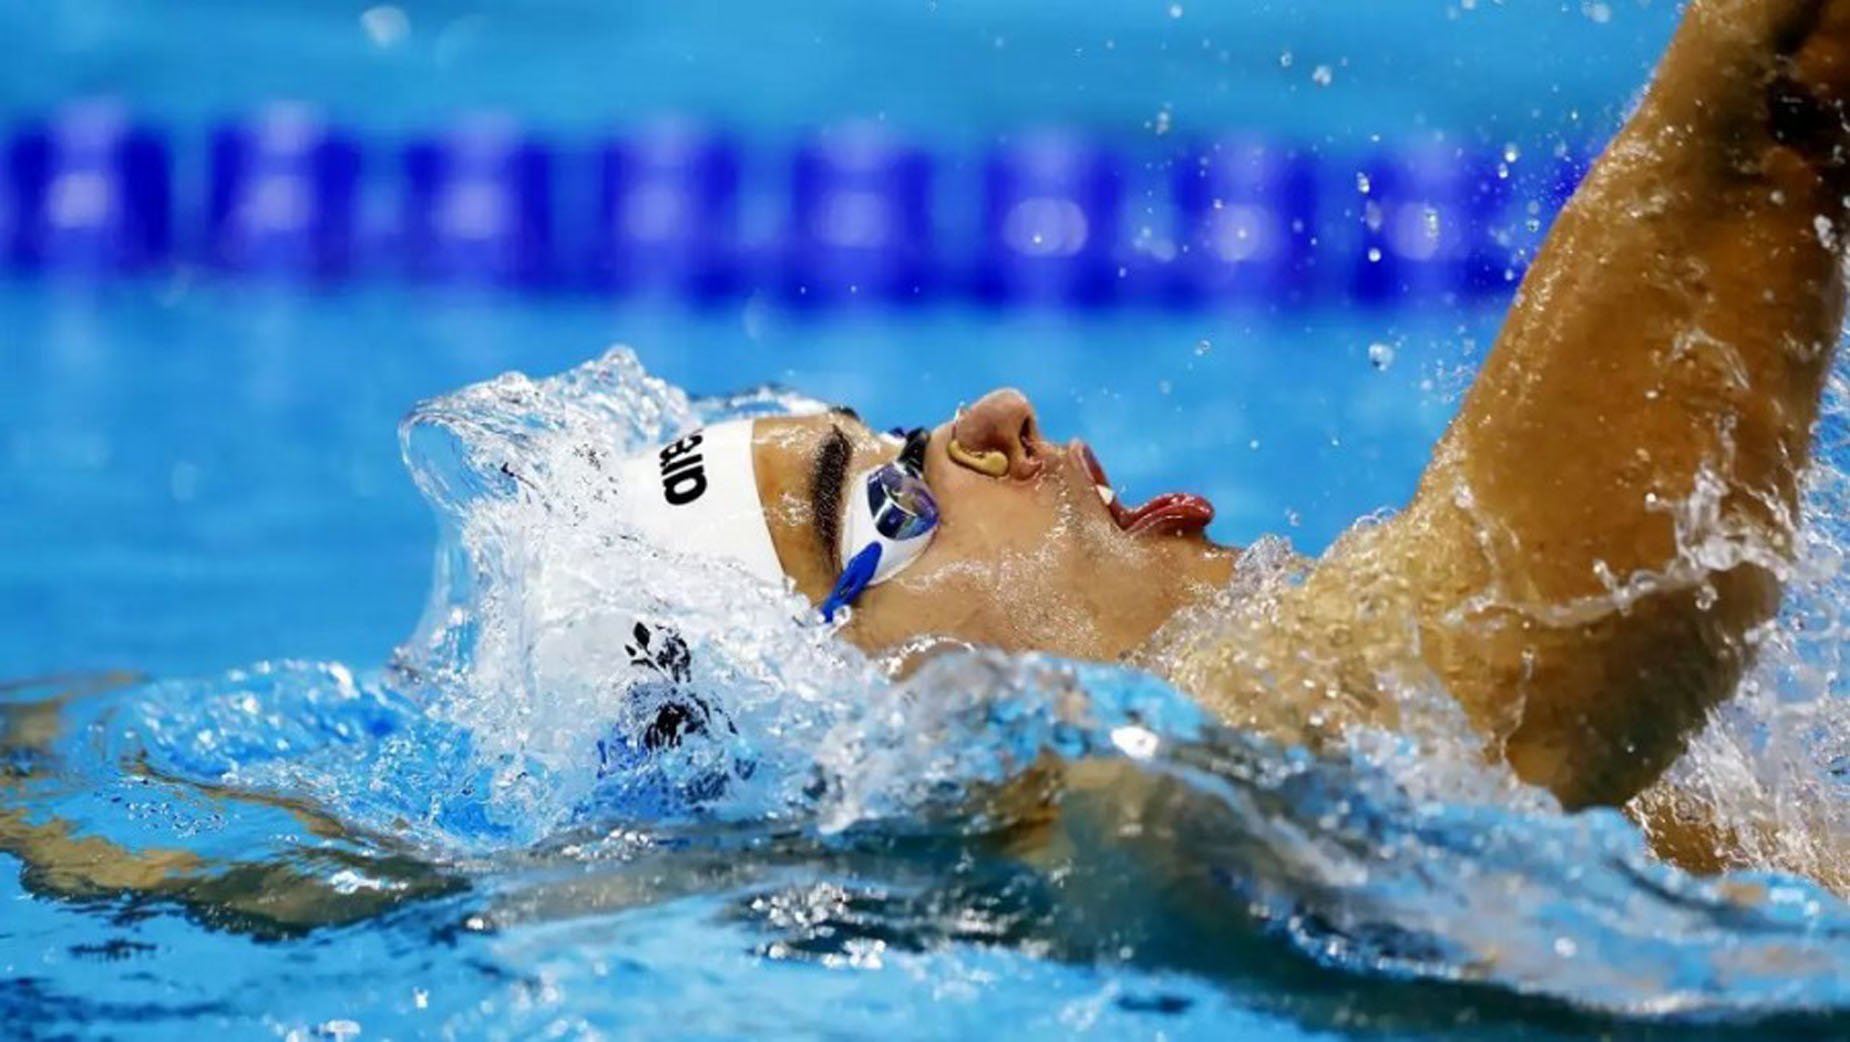 Κολύμβηση: Ο Απόστολος Χρήστου κατέκτησε το ασημένιο μετάλλιο στα 100μ. ύπτιο